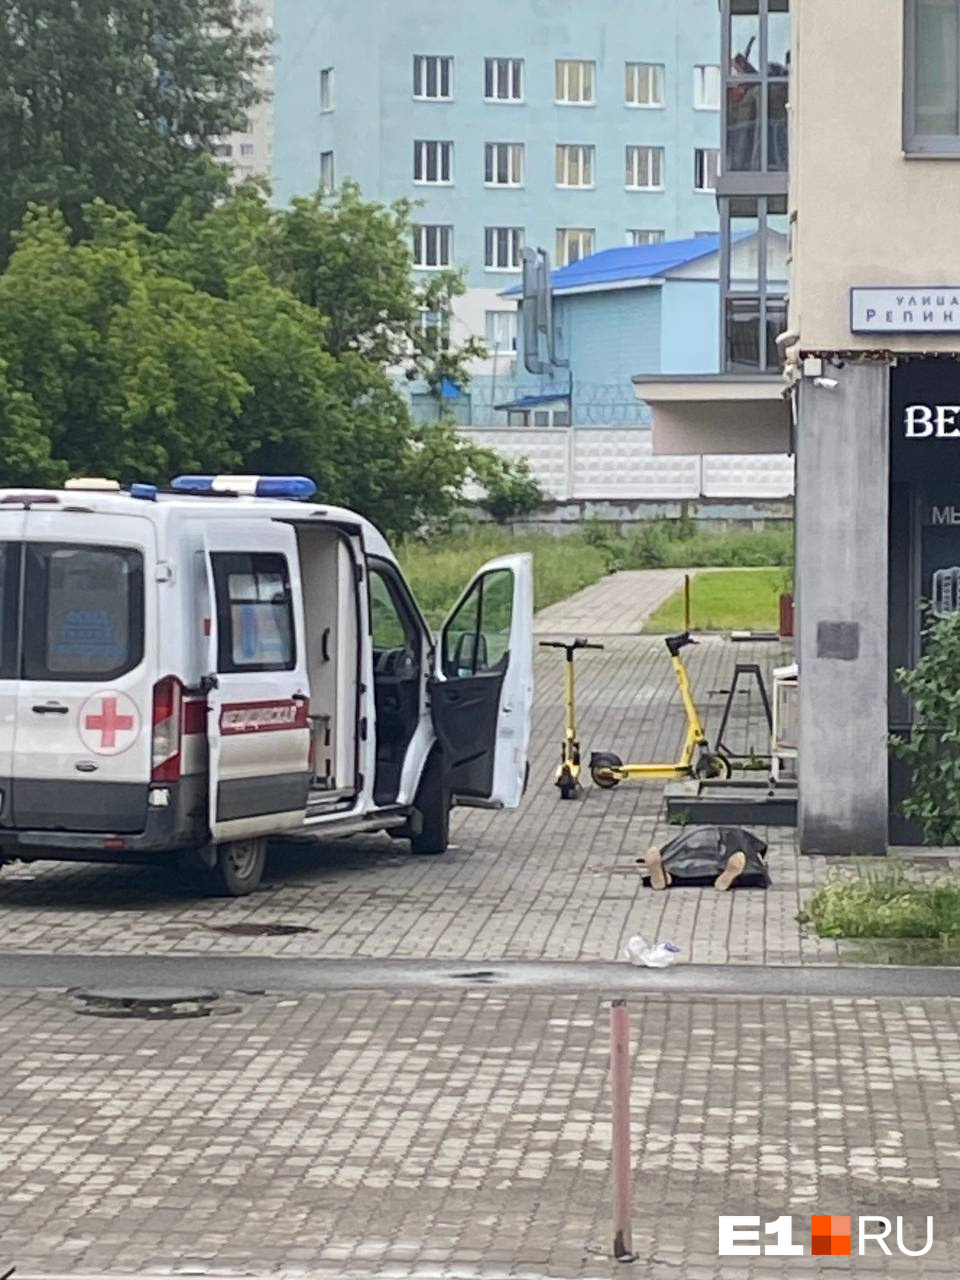 «Он его палкой большой забил!» В Екатеринбурге на улице убили мужчину